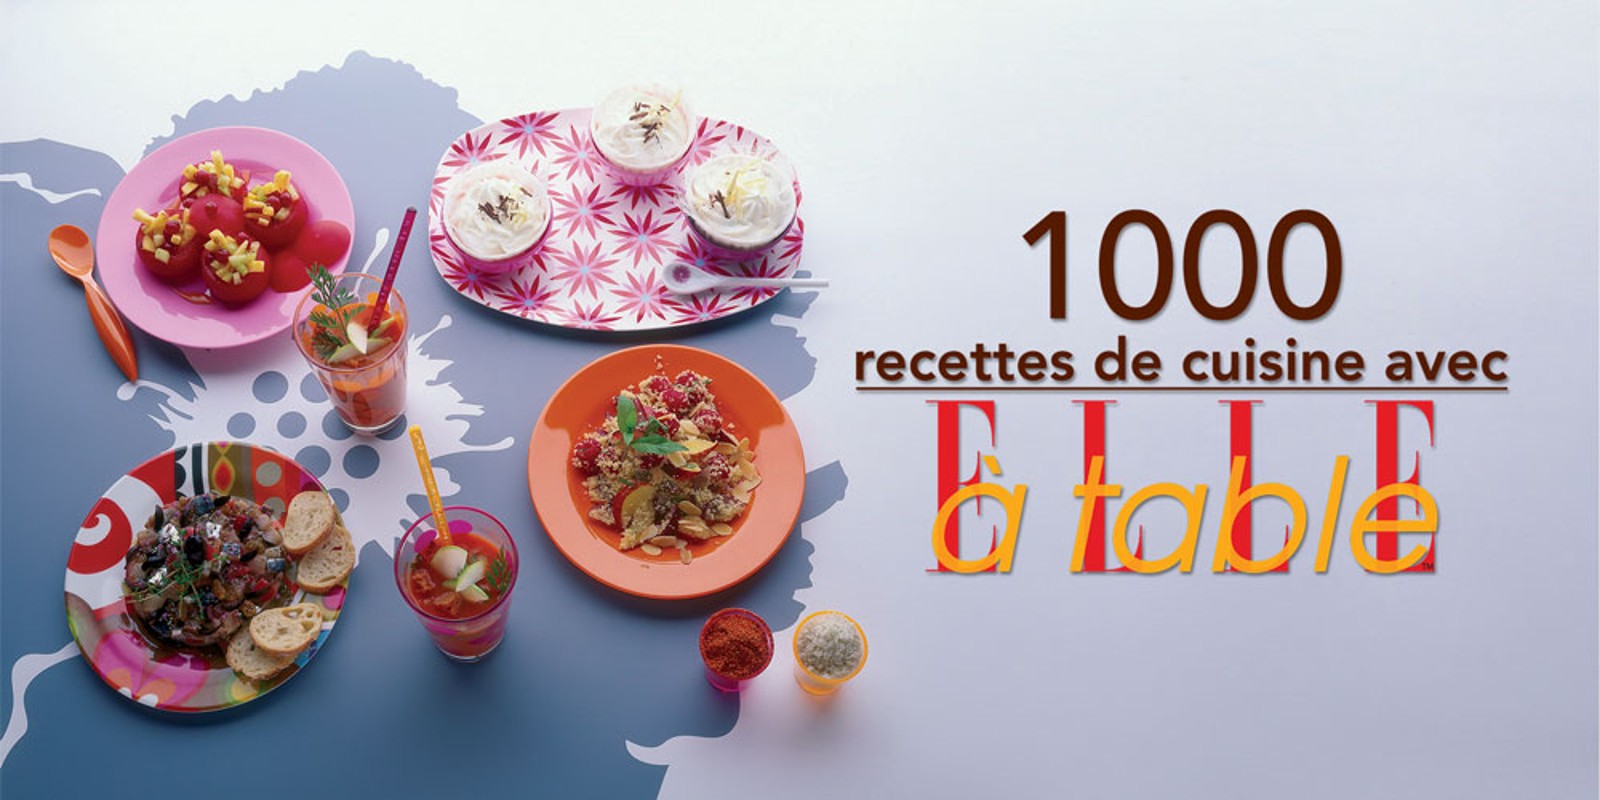 1 000 recettes de cuisine avec ELLE à table